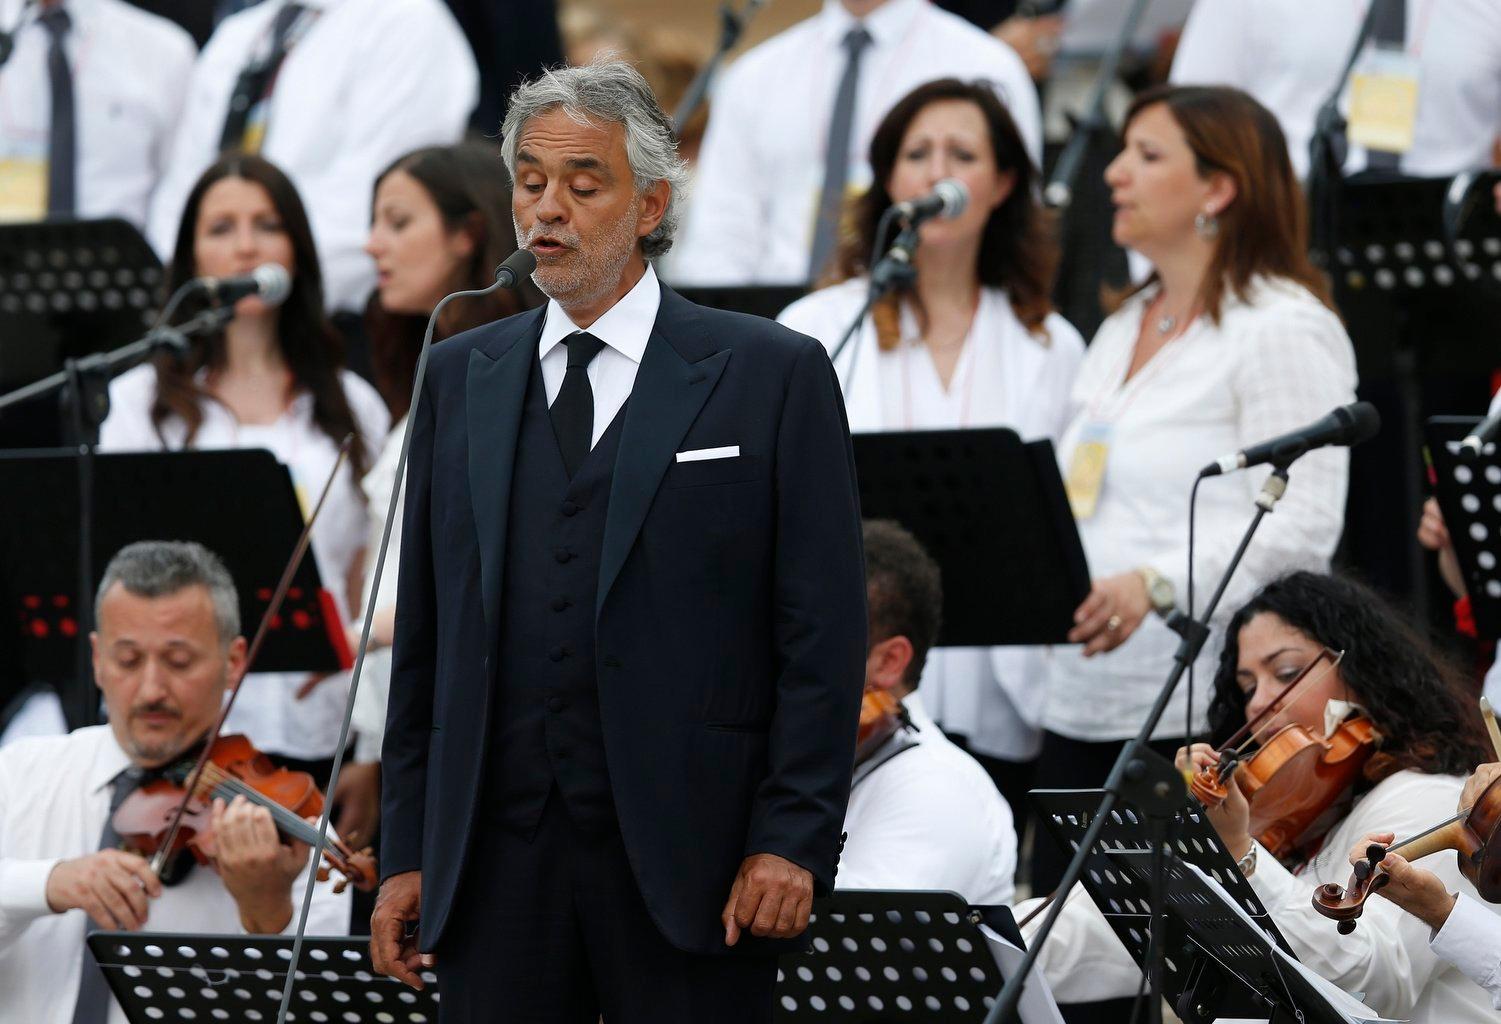 Famed Italian tenor sings two songs in new ‘Fatima’ movie